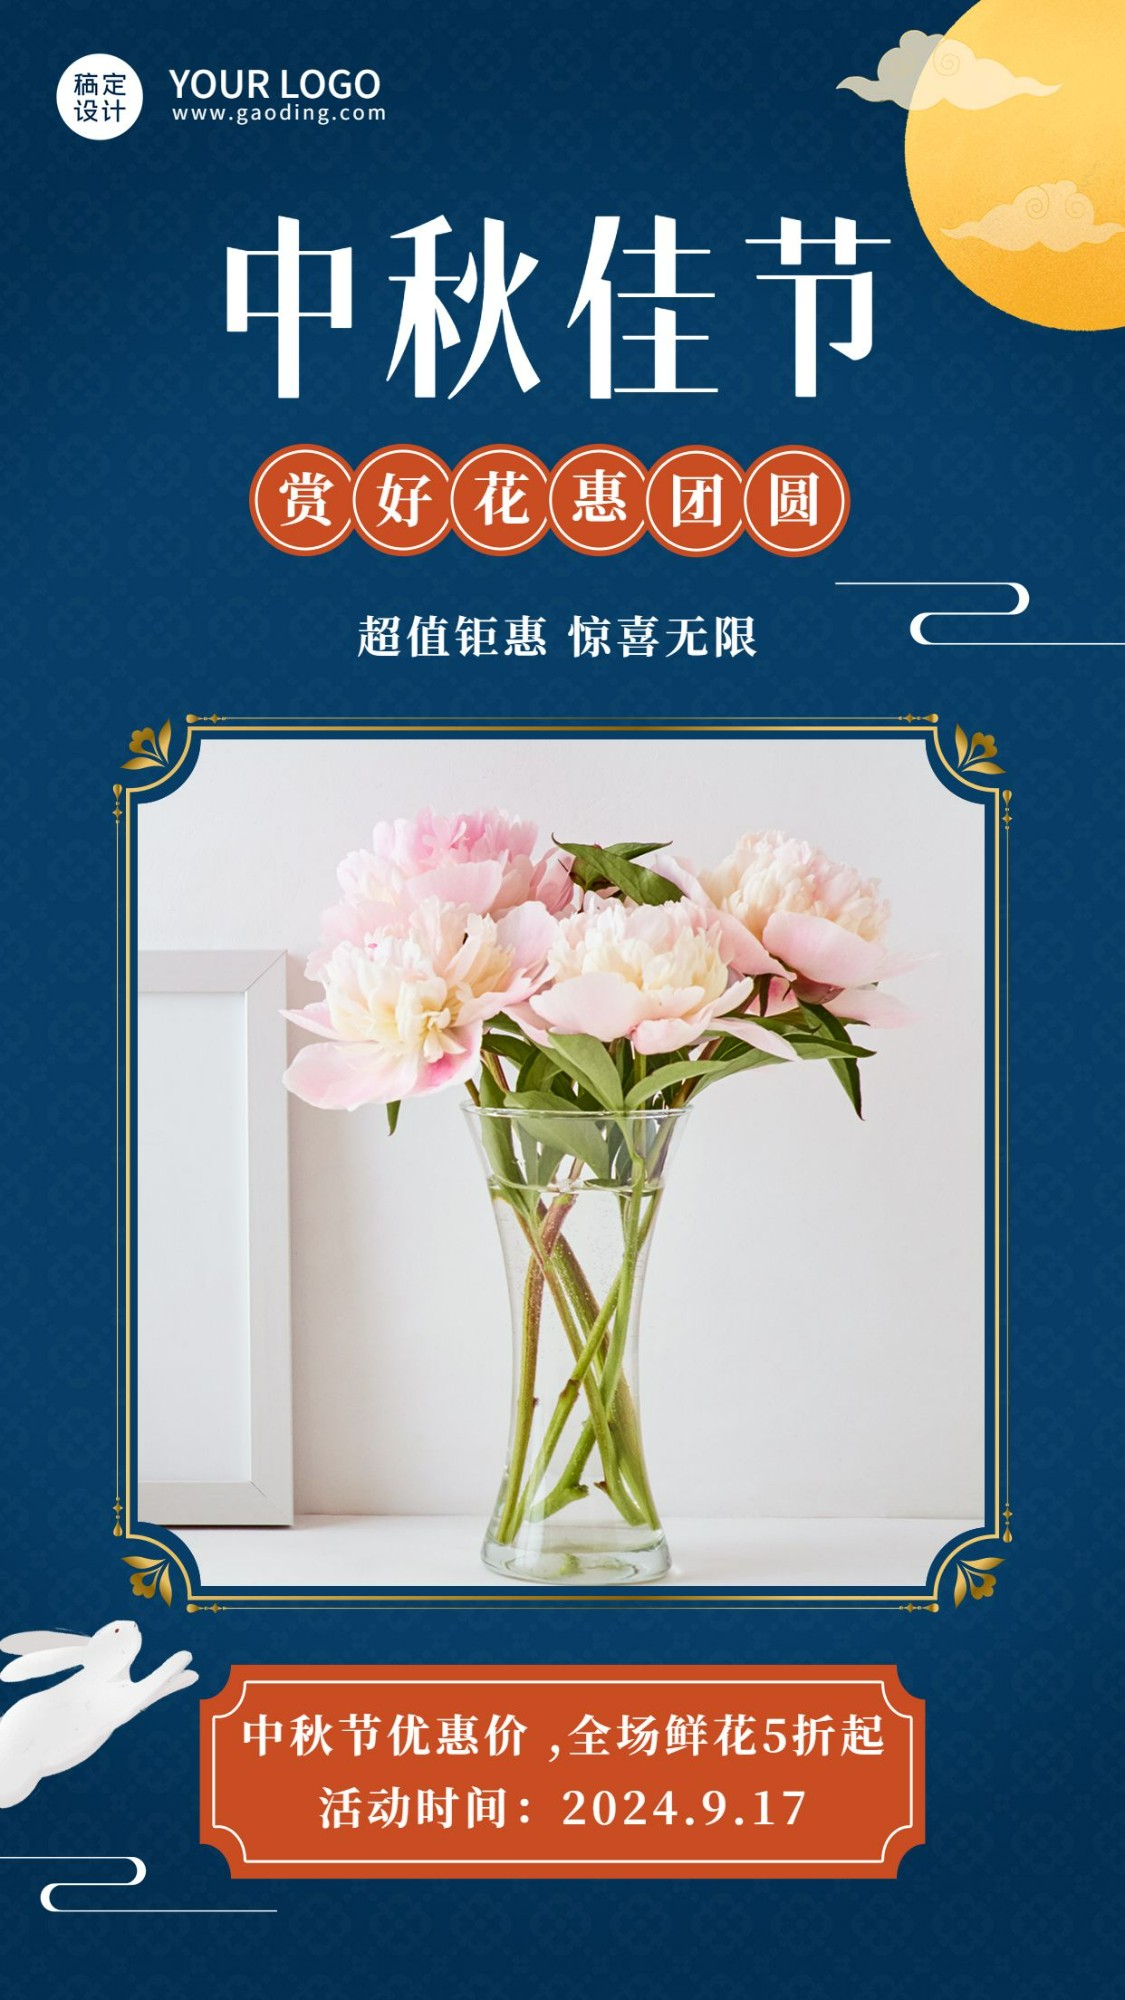 中秋节鲜花产品展示送礼手机海报预览效果